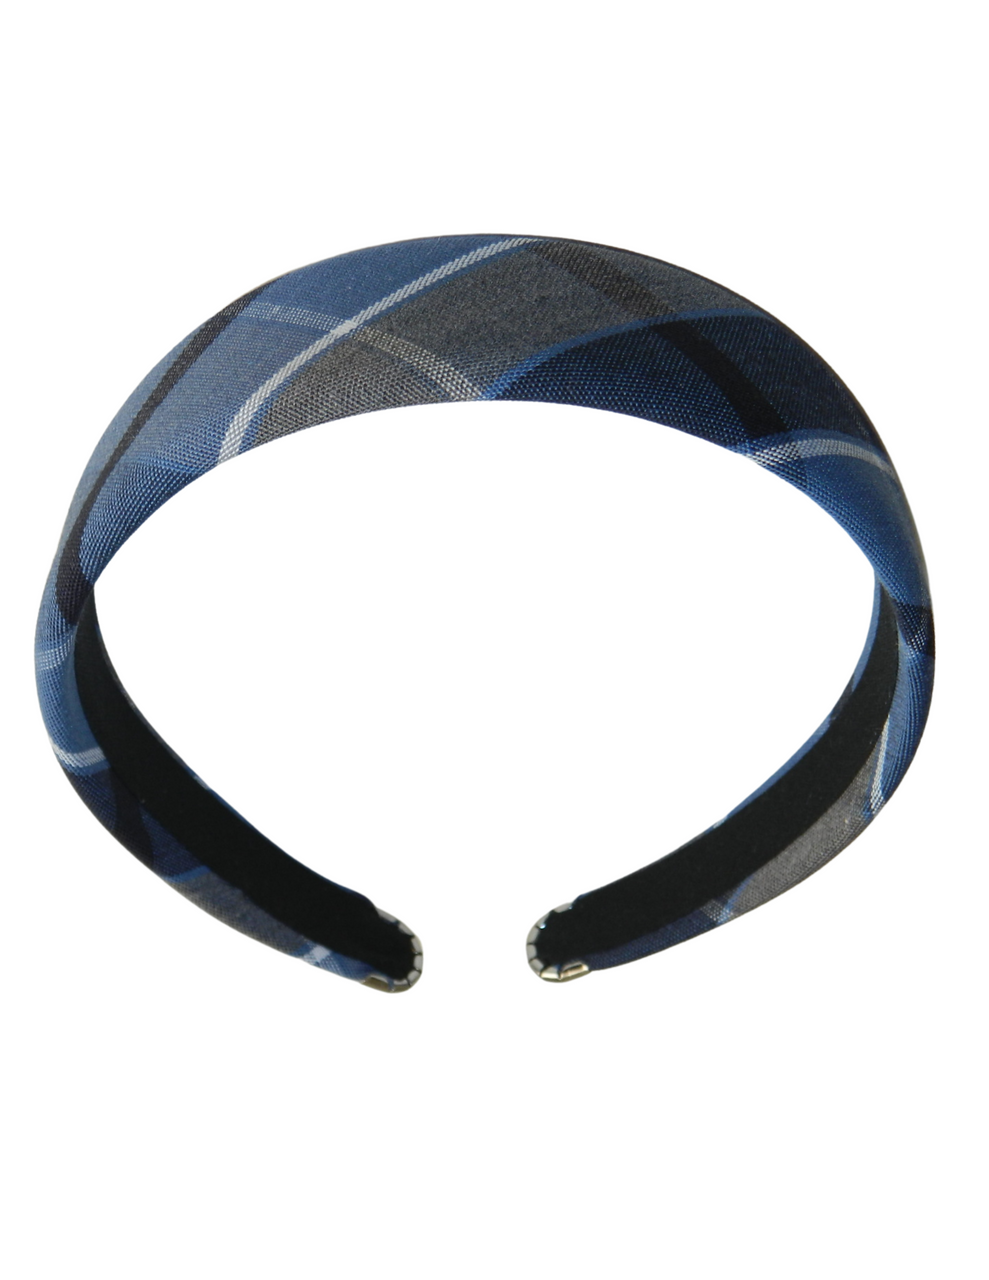 Blue, Gray & Black Plaid 1.5" Headband